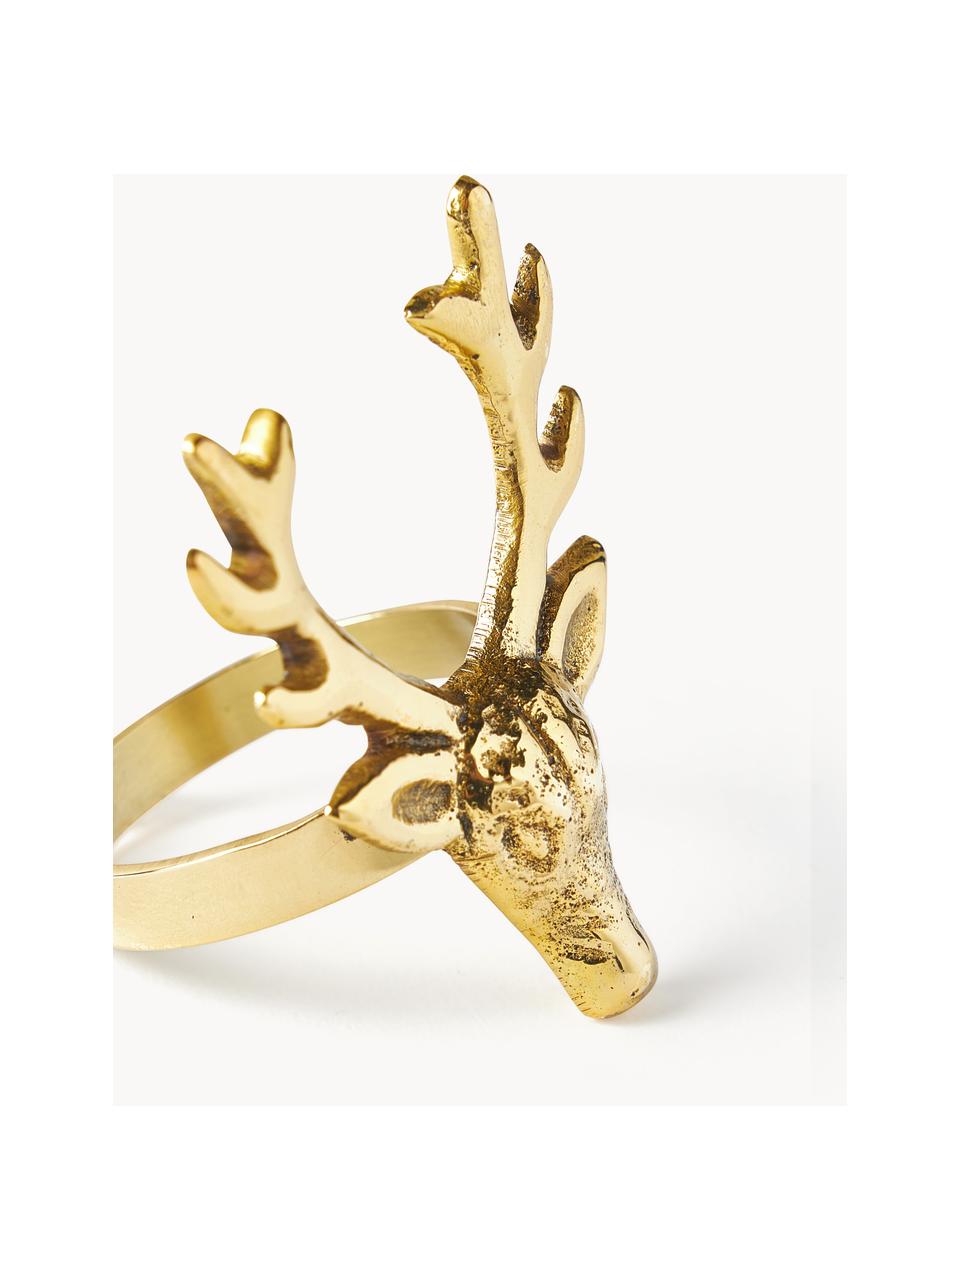 Serviettenringe Deer, 4 Stück, Metall, beschichtet, Goldfarben, B 5 x H 6 cm